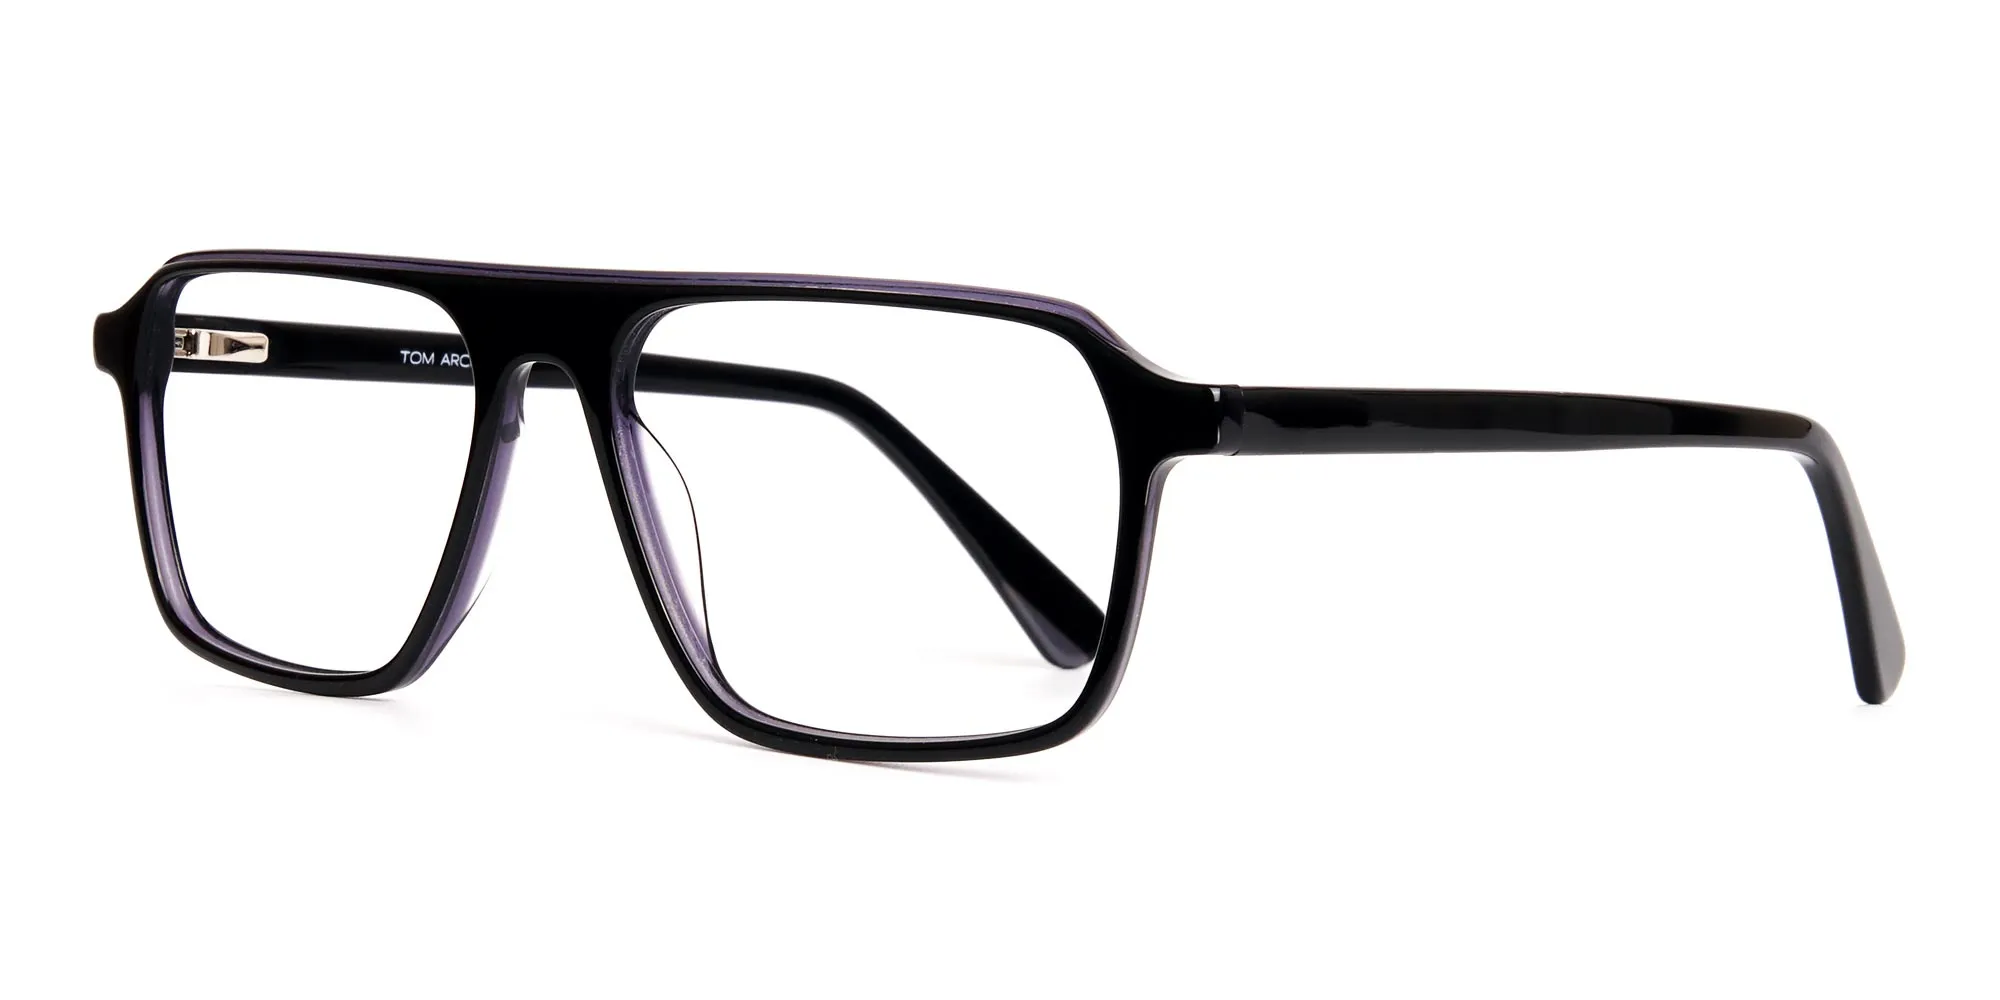 Black and Grey Rectangular Full Rim Glasses frames-2